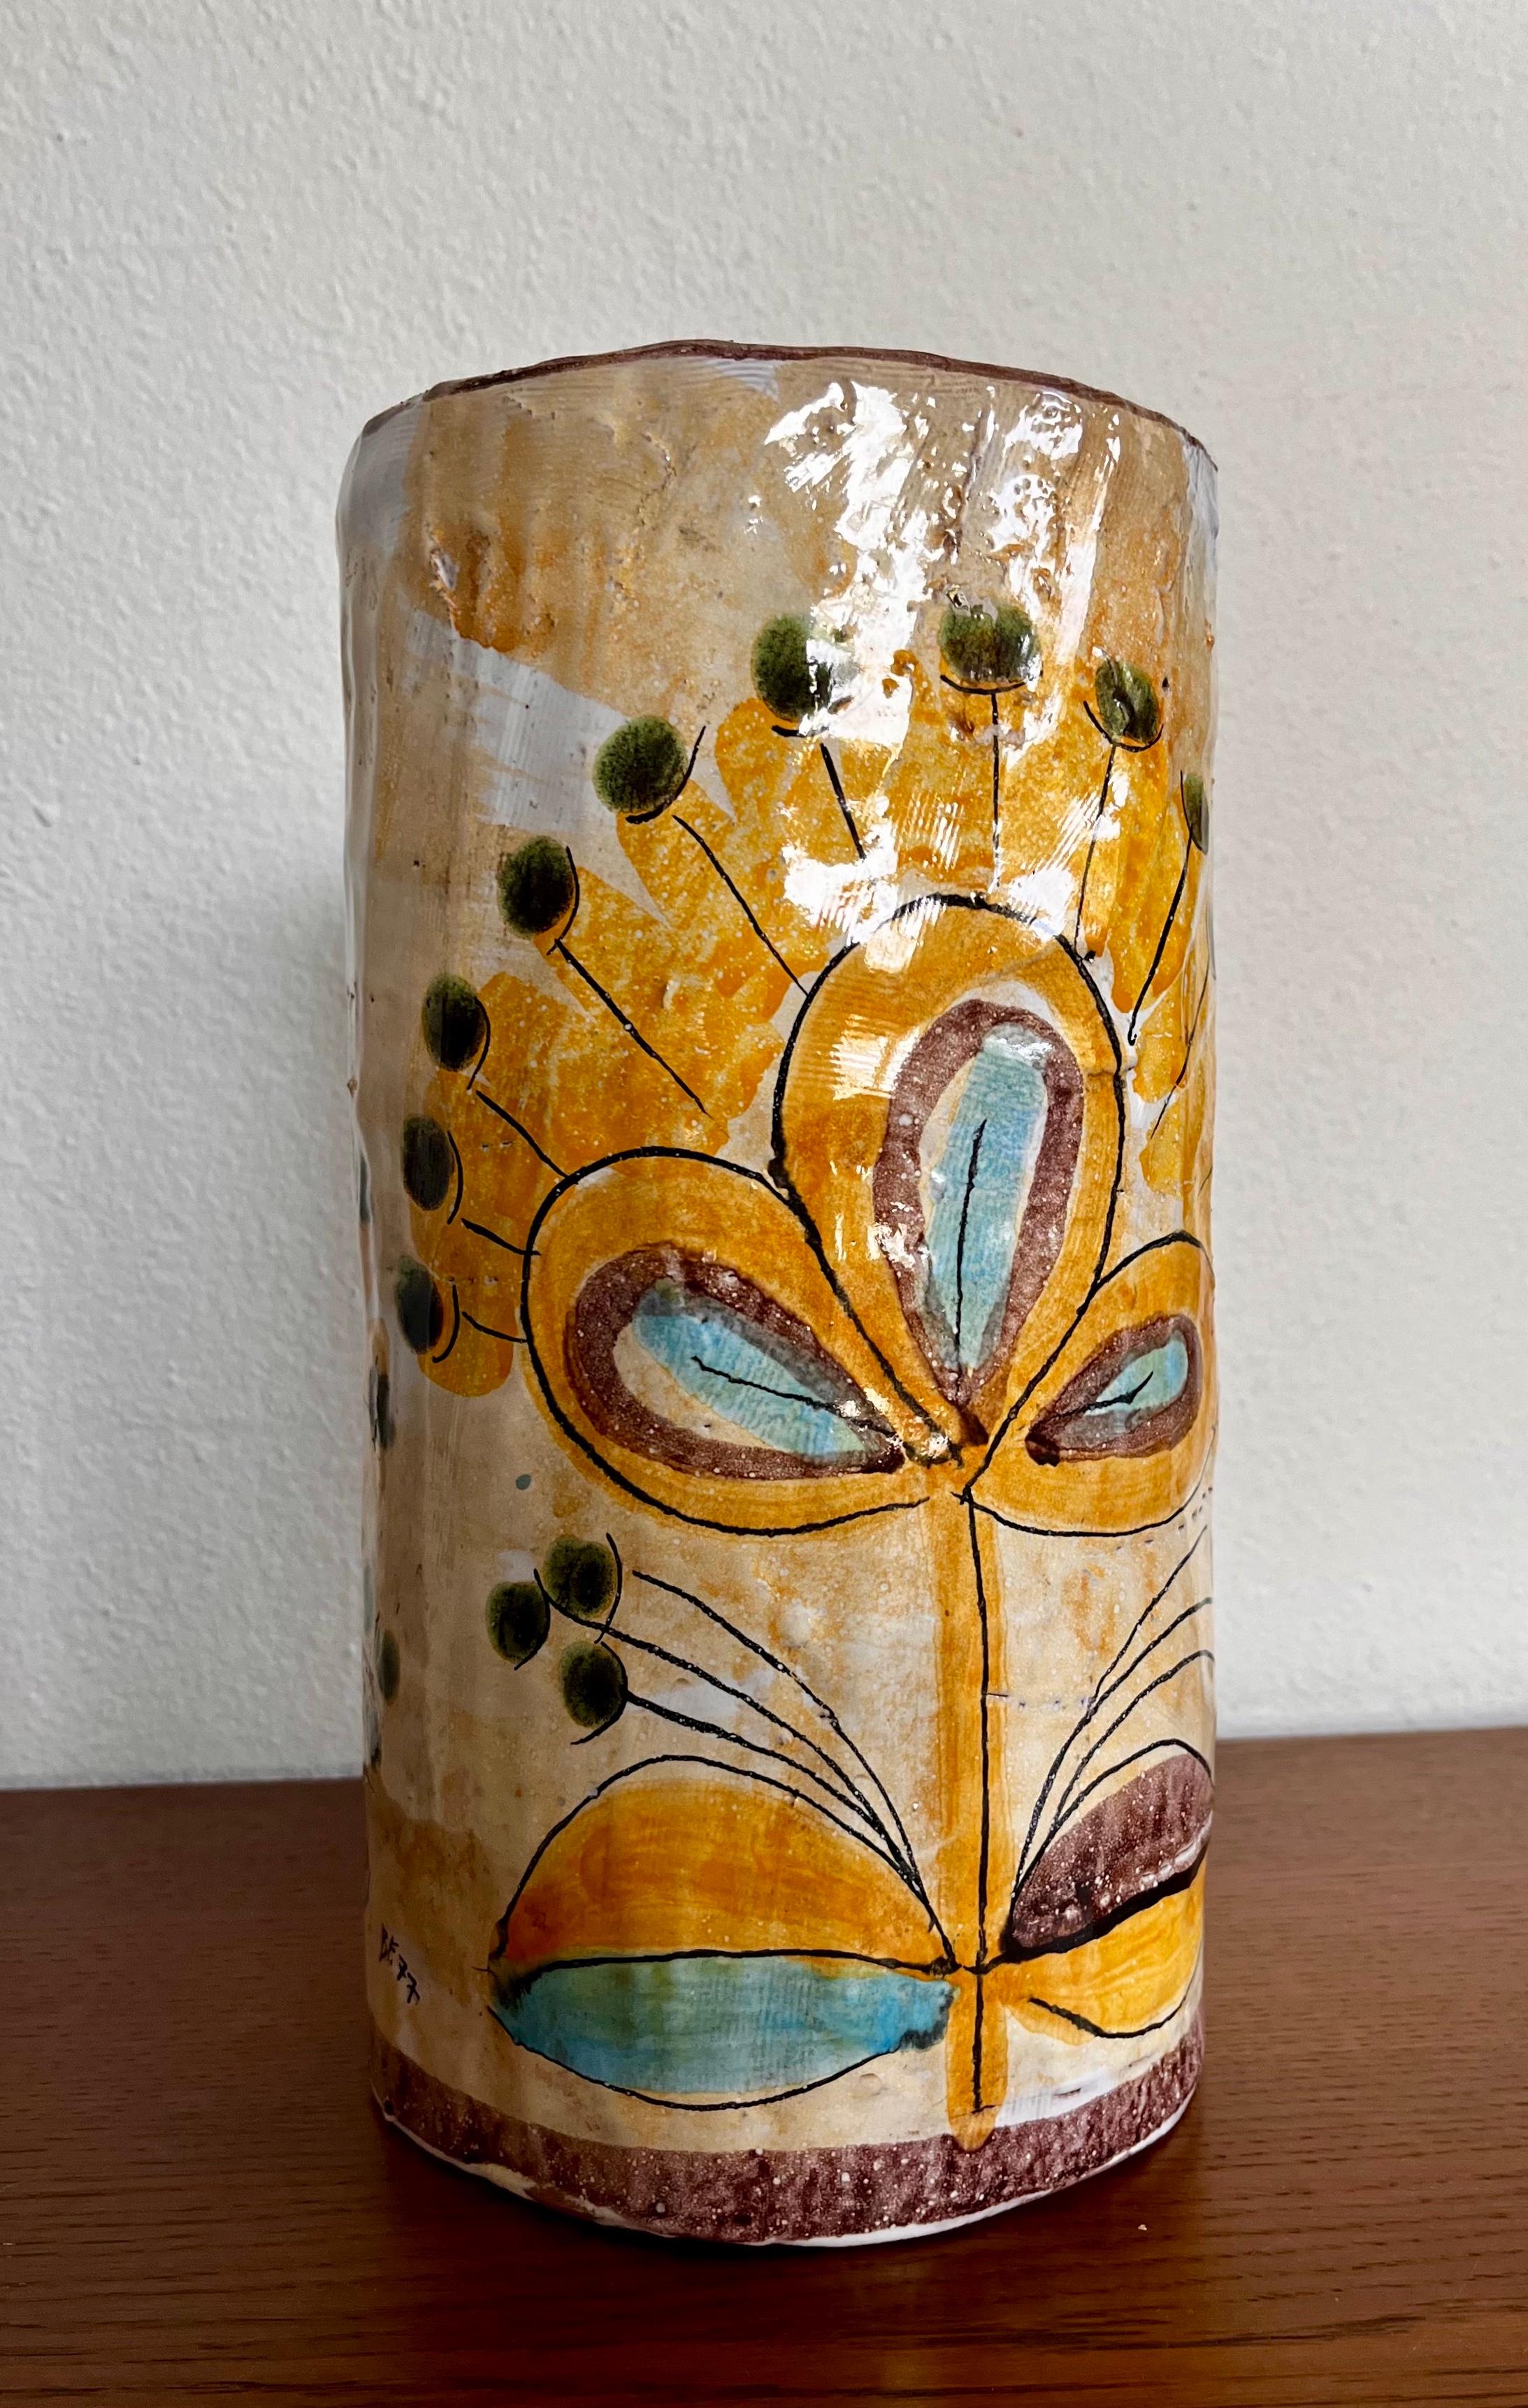 Grand vase en céramique de style italien signé Mid-Century Modern studio pottery. Signé et daté par l'artiste, BF 77. 
Elle présente un design d'inspiration brutaliste avec des motifs floraux peints à la main et un intérieur texturé et glacé. 
En